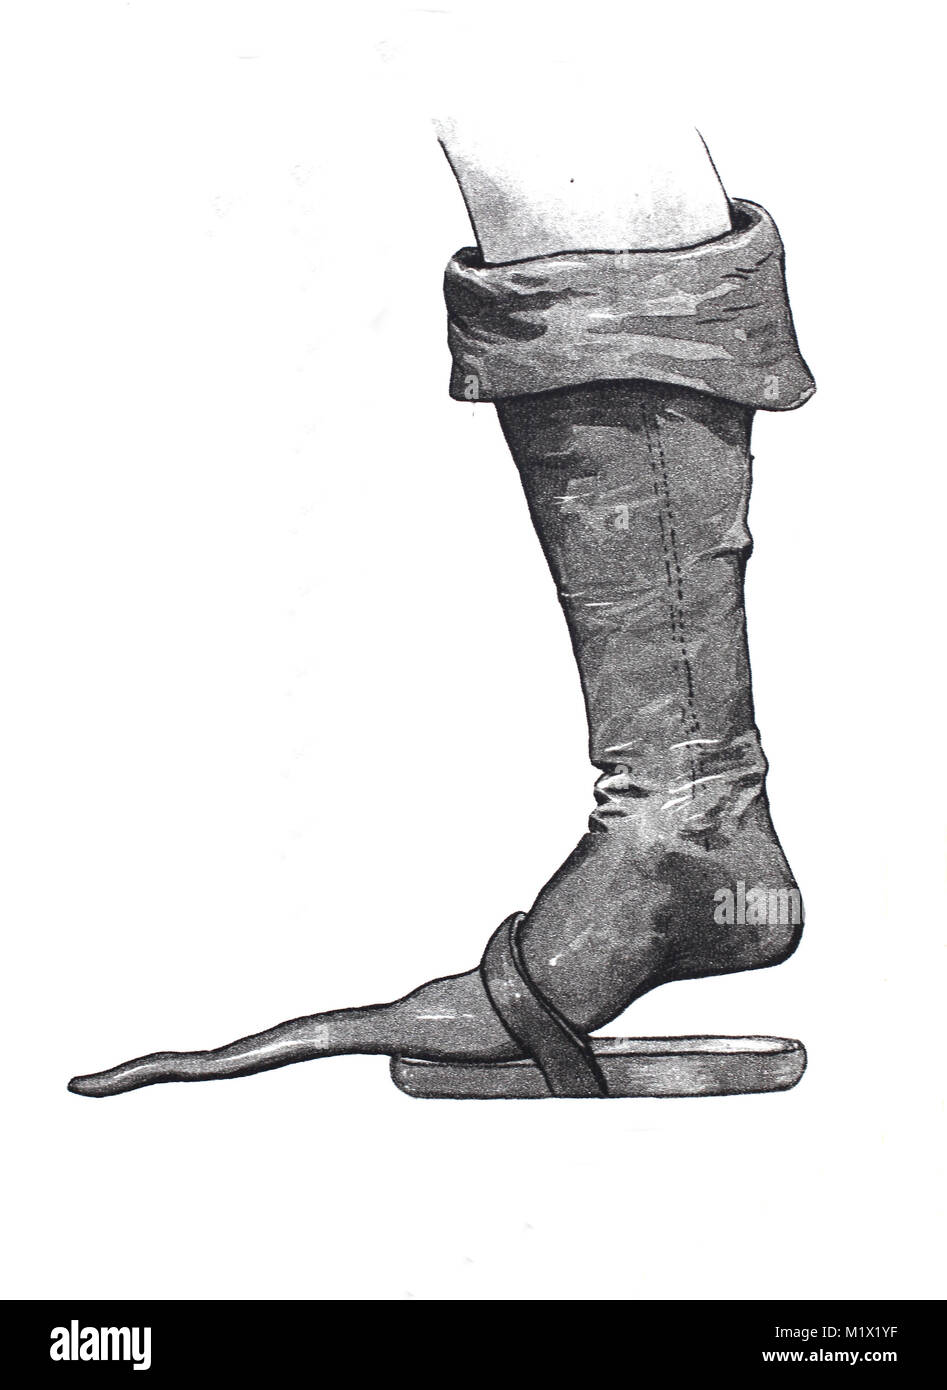 La mode, les vêtements, les chaussures à la fin du Moyen-Âge en Europe, les bottes à bec court-sous-patin, de l'amélioration numérique d'impression reproduction d'un original du 19ème siècle Banque D'Images